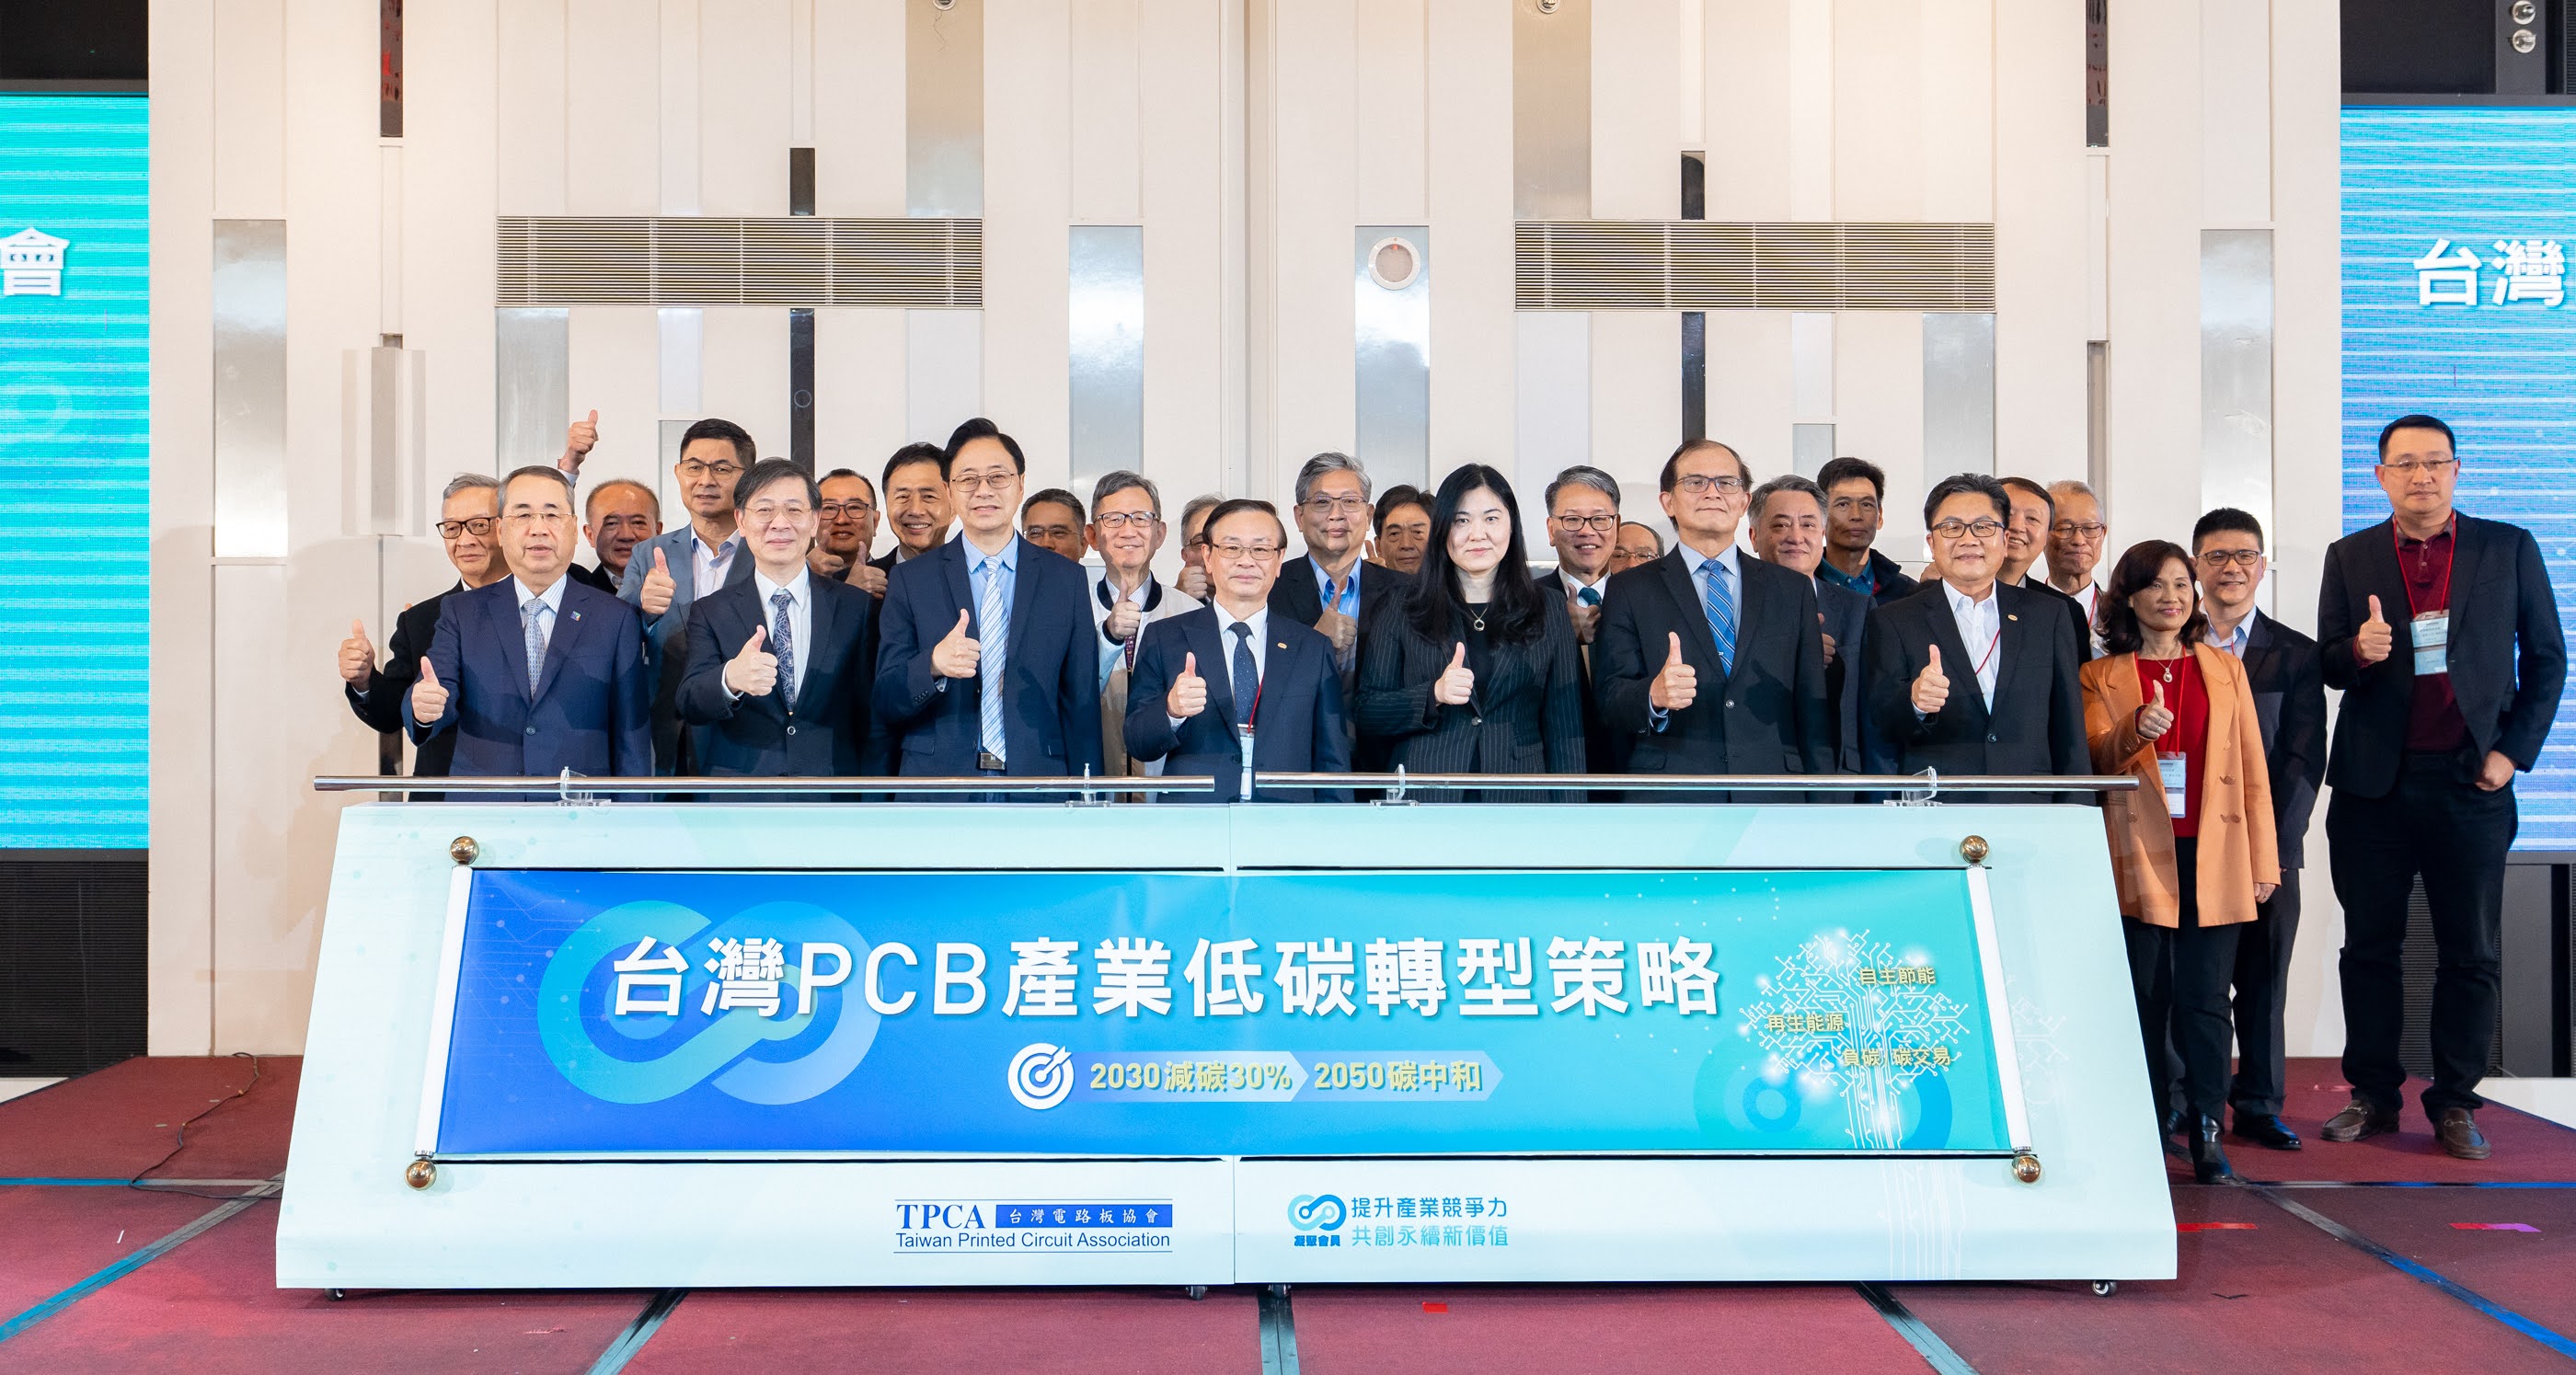 陳佩利副署長出席電路板協會於112年3月30日舉辦之「臺灣PCB產業低碳轉型策略發布會」並致詞